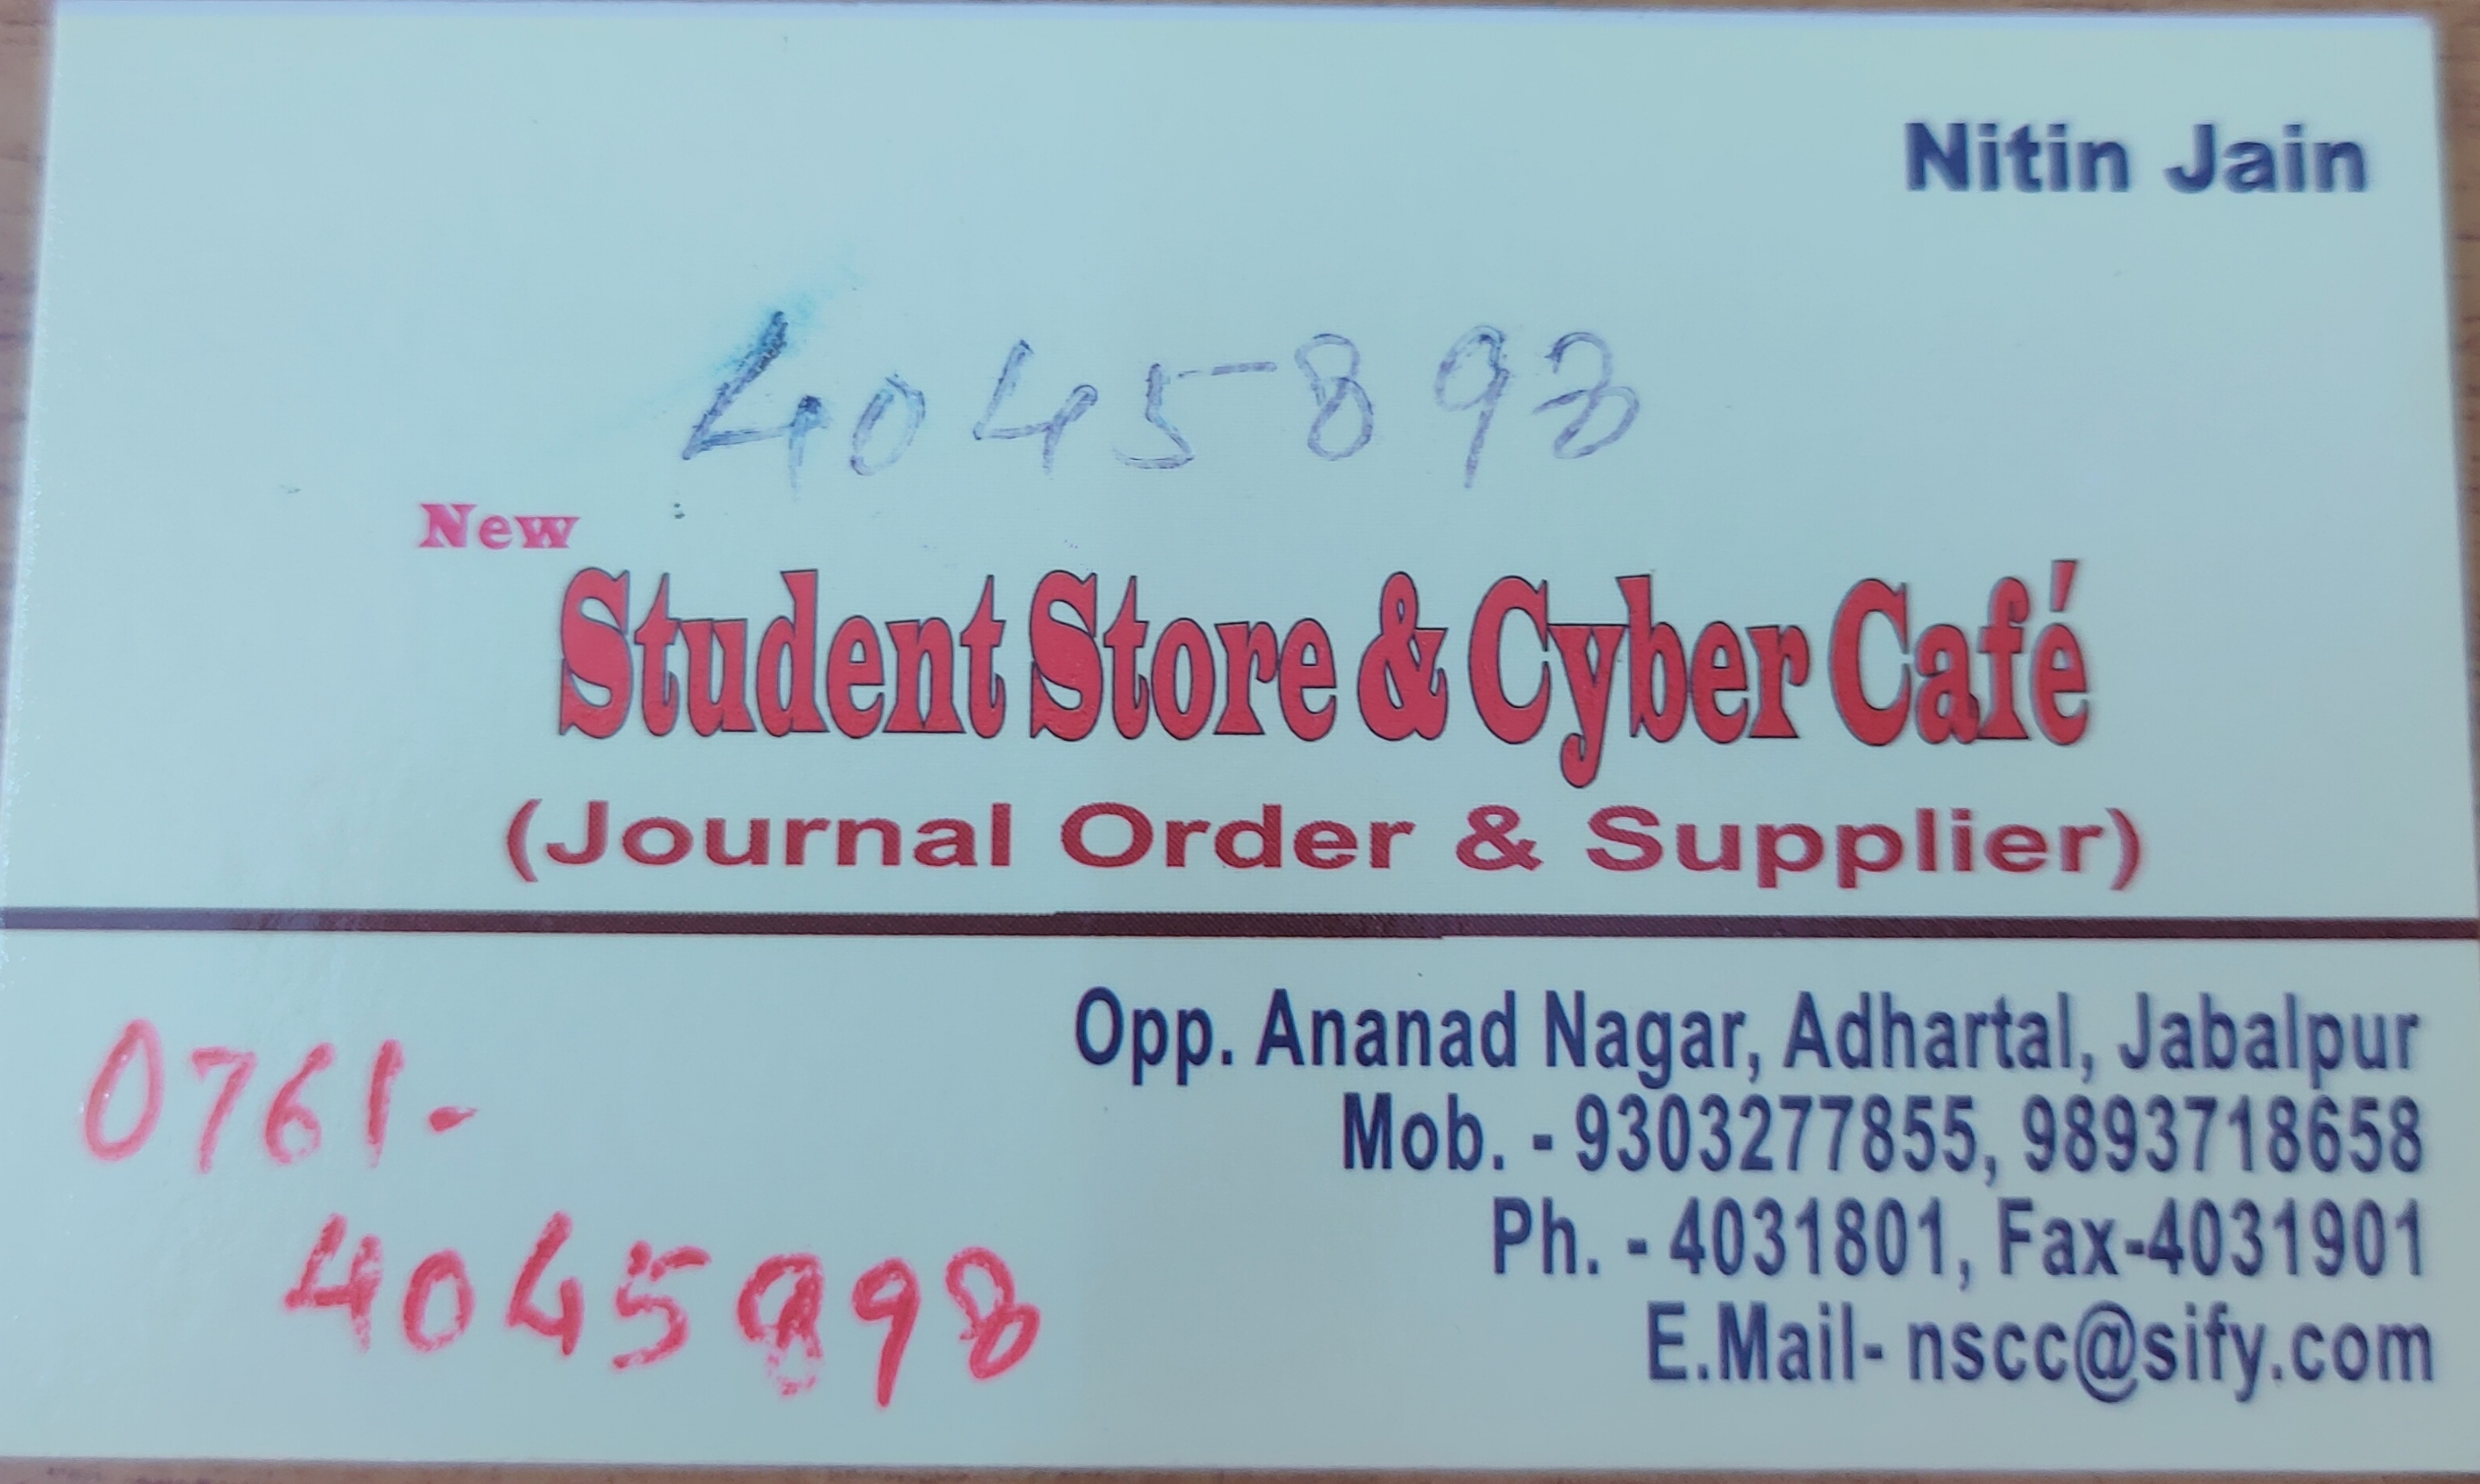 Student Store & Cyber cafe Jabalpur